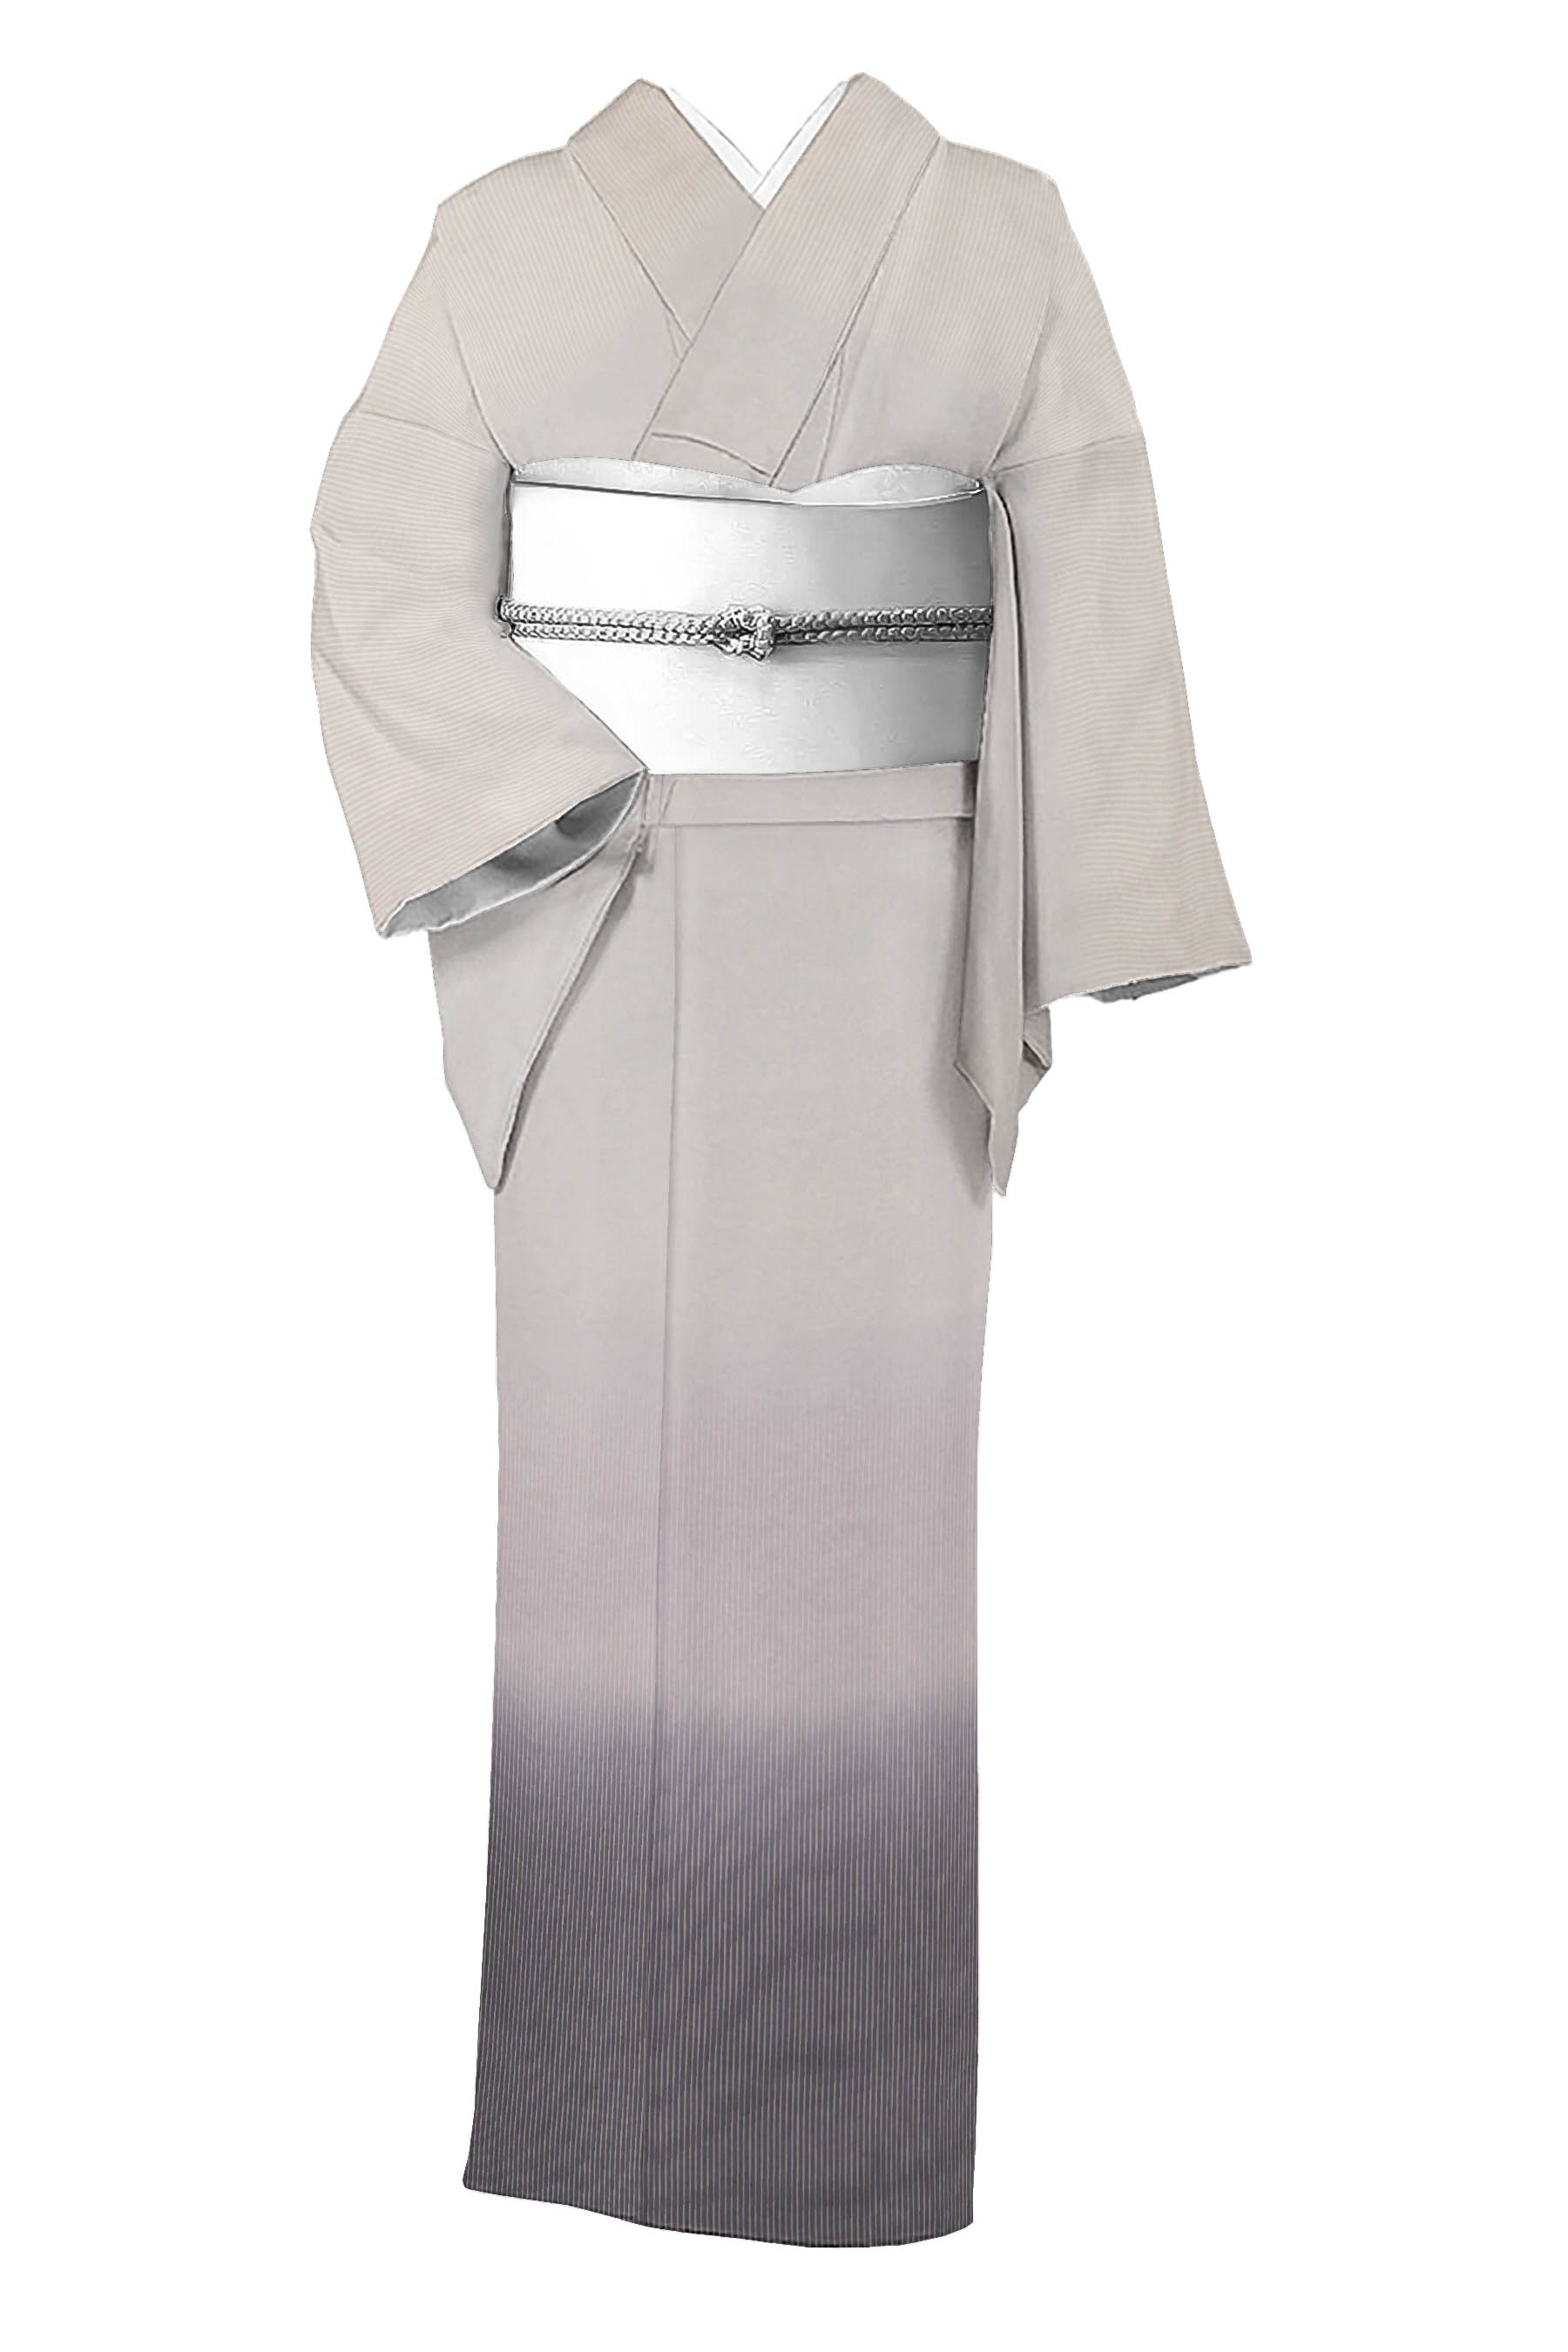 新品 反物 正絹 長襦袢 美しい着物 和装 呉服 紬 小紋 裏地反物価格になります